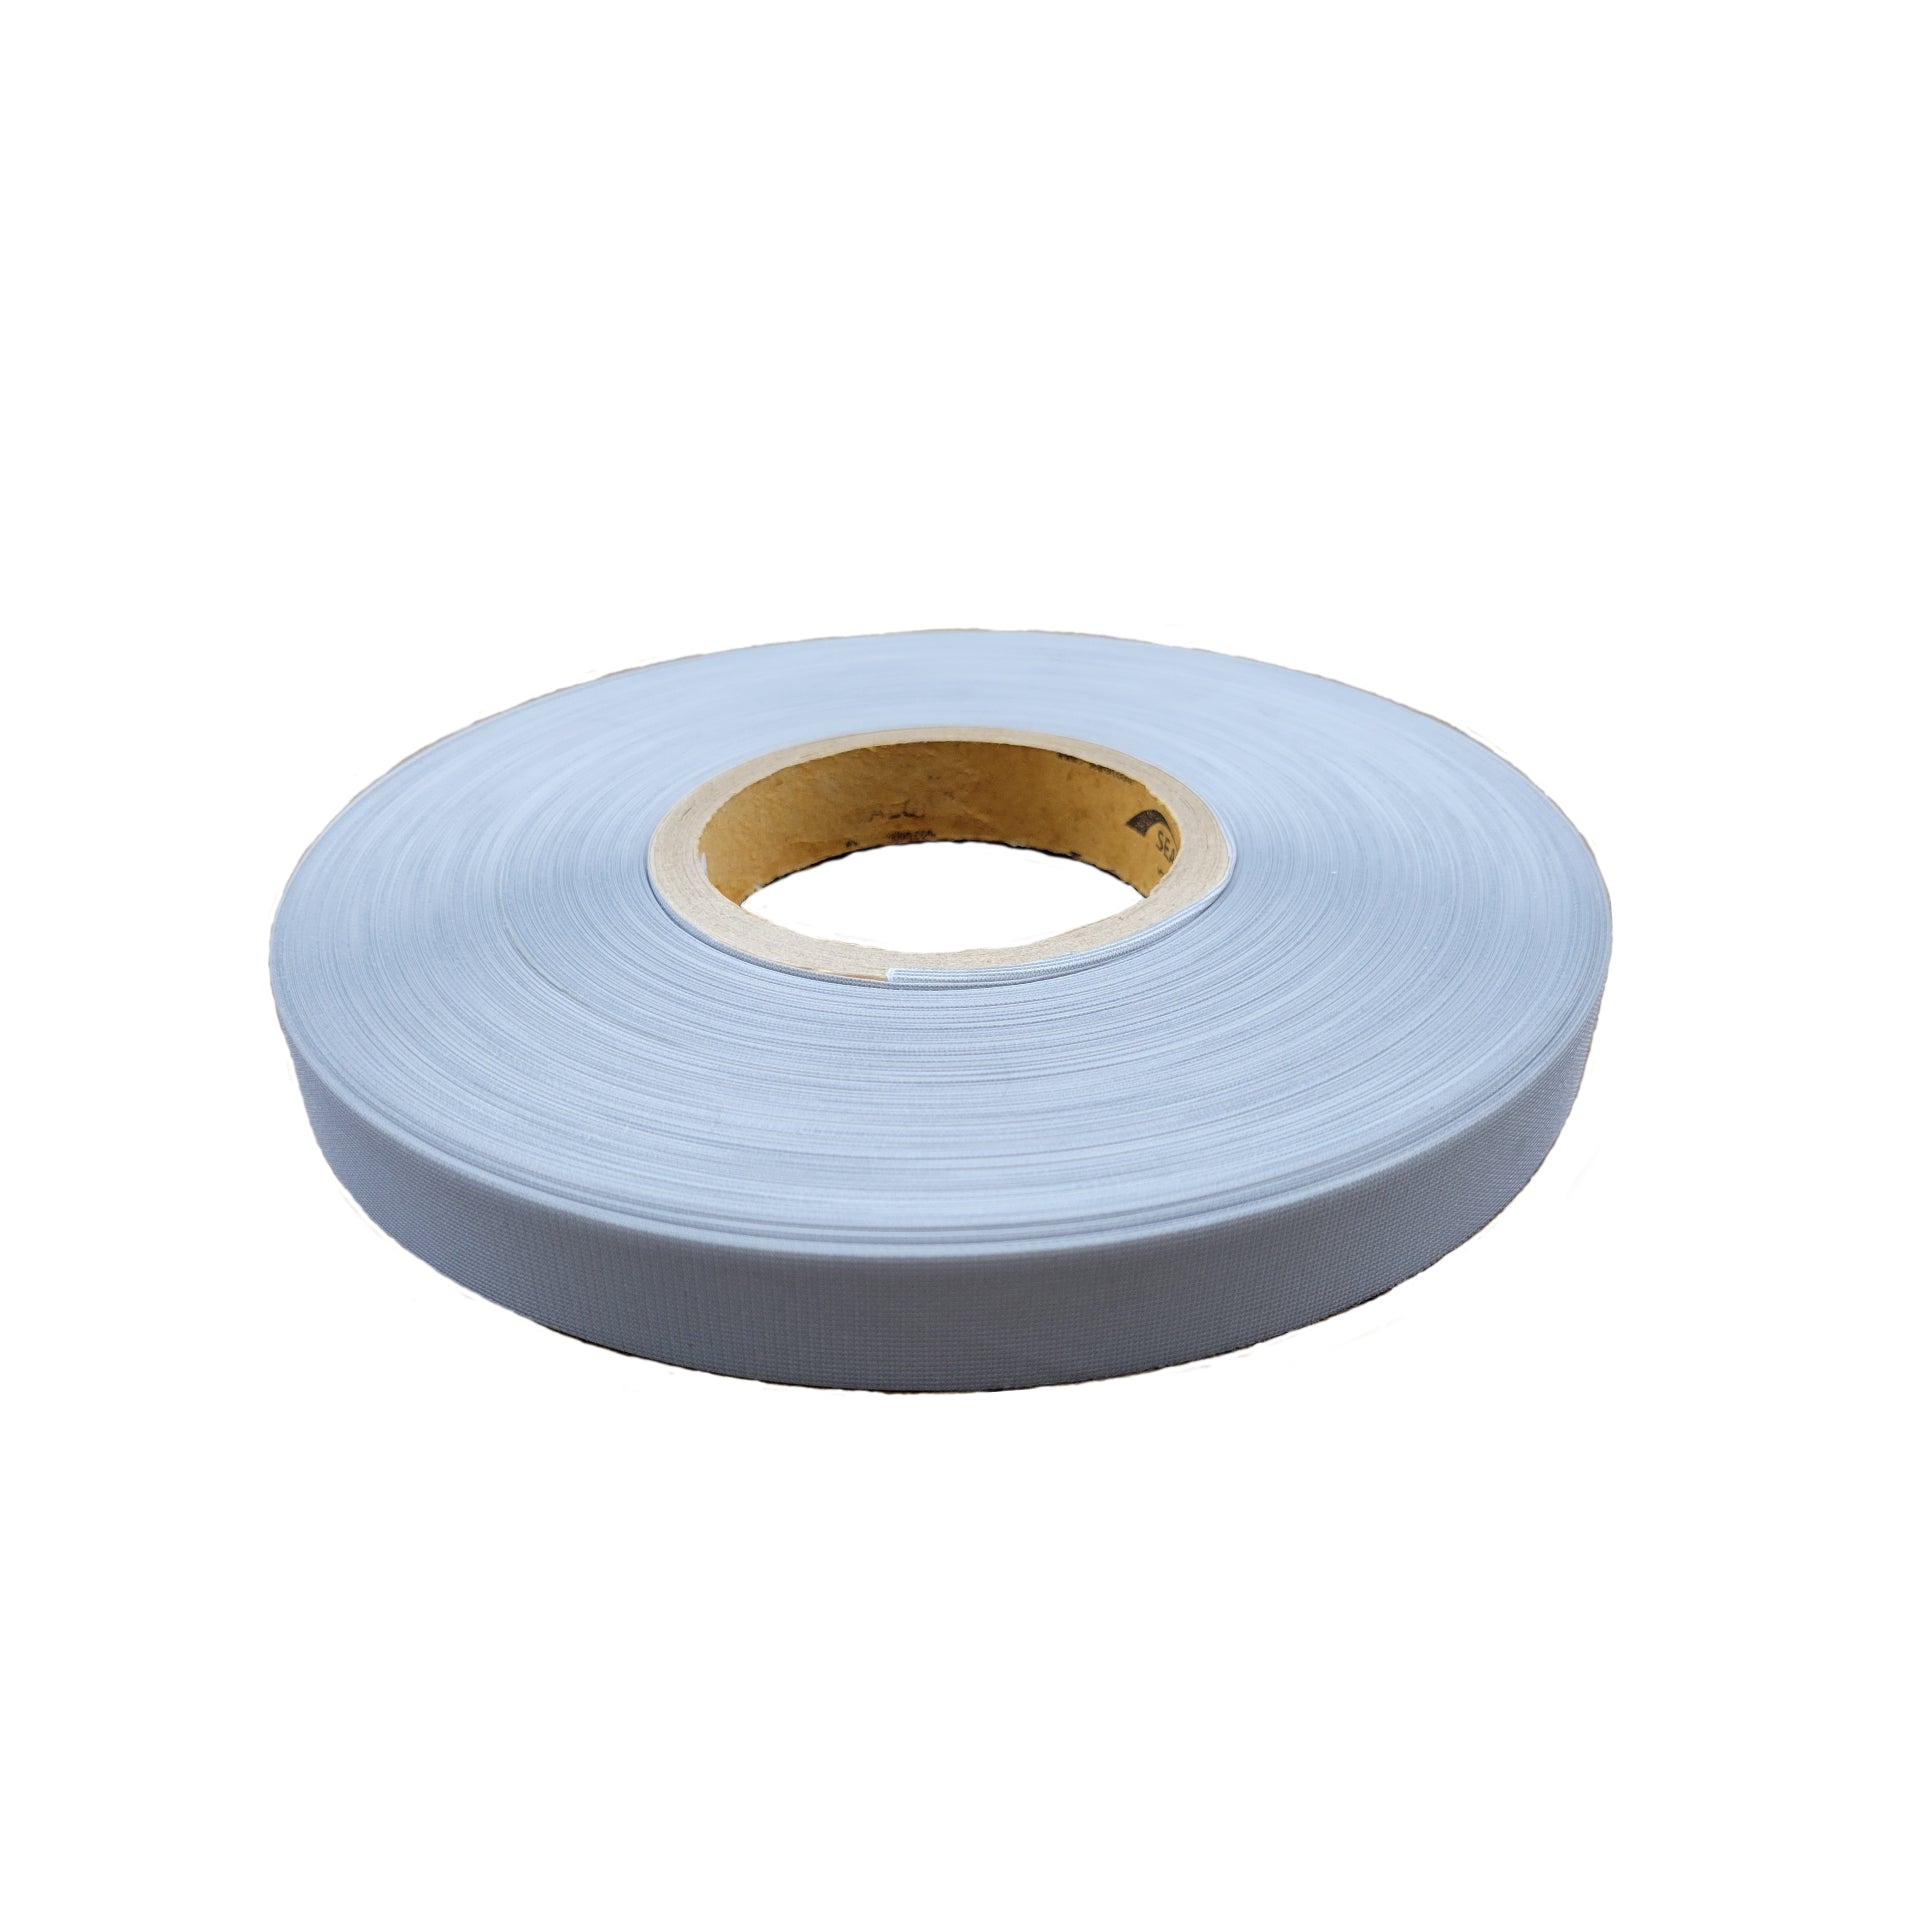 Gore-Seam Tape 200m 1/2” Wide Seam Sealing Waterproof Textile Repair Tape